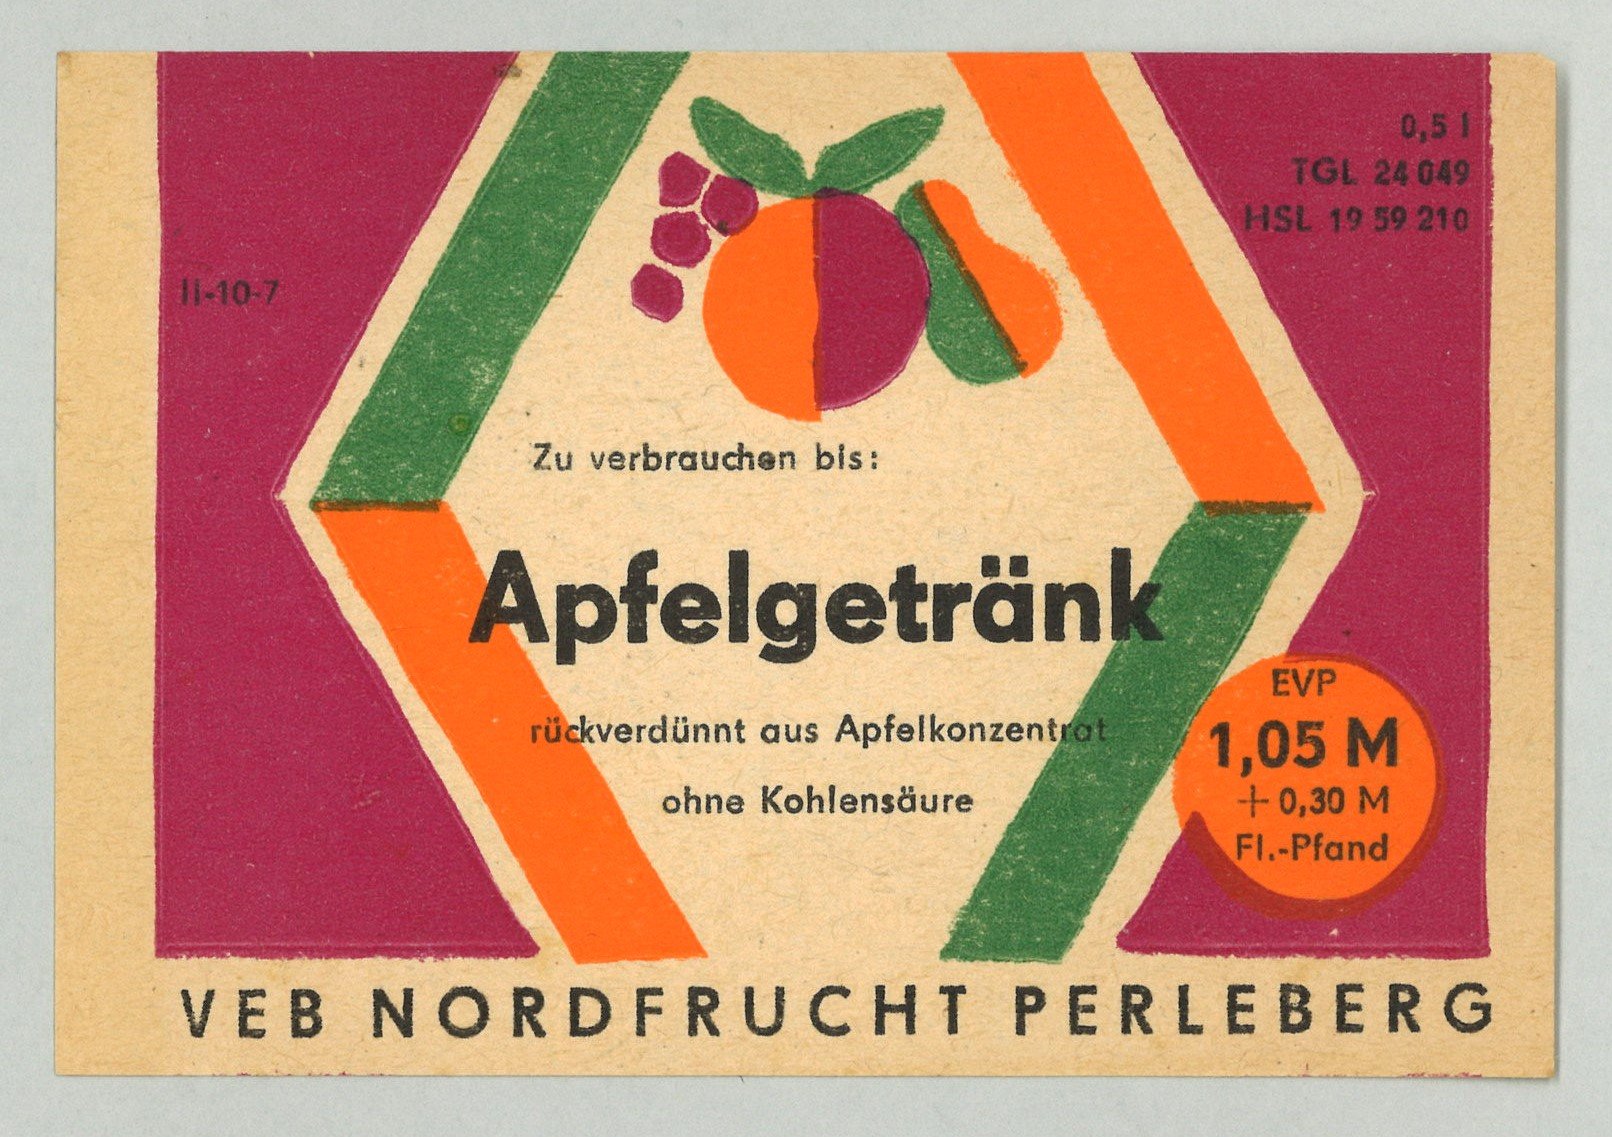 Apfelsaftgetränk des VEB Nordfrucht Perleberg (Landesgeschichtliche Vereinigung für die Mark Brandenburg e.V., Archiv CC BY)